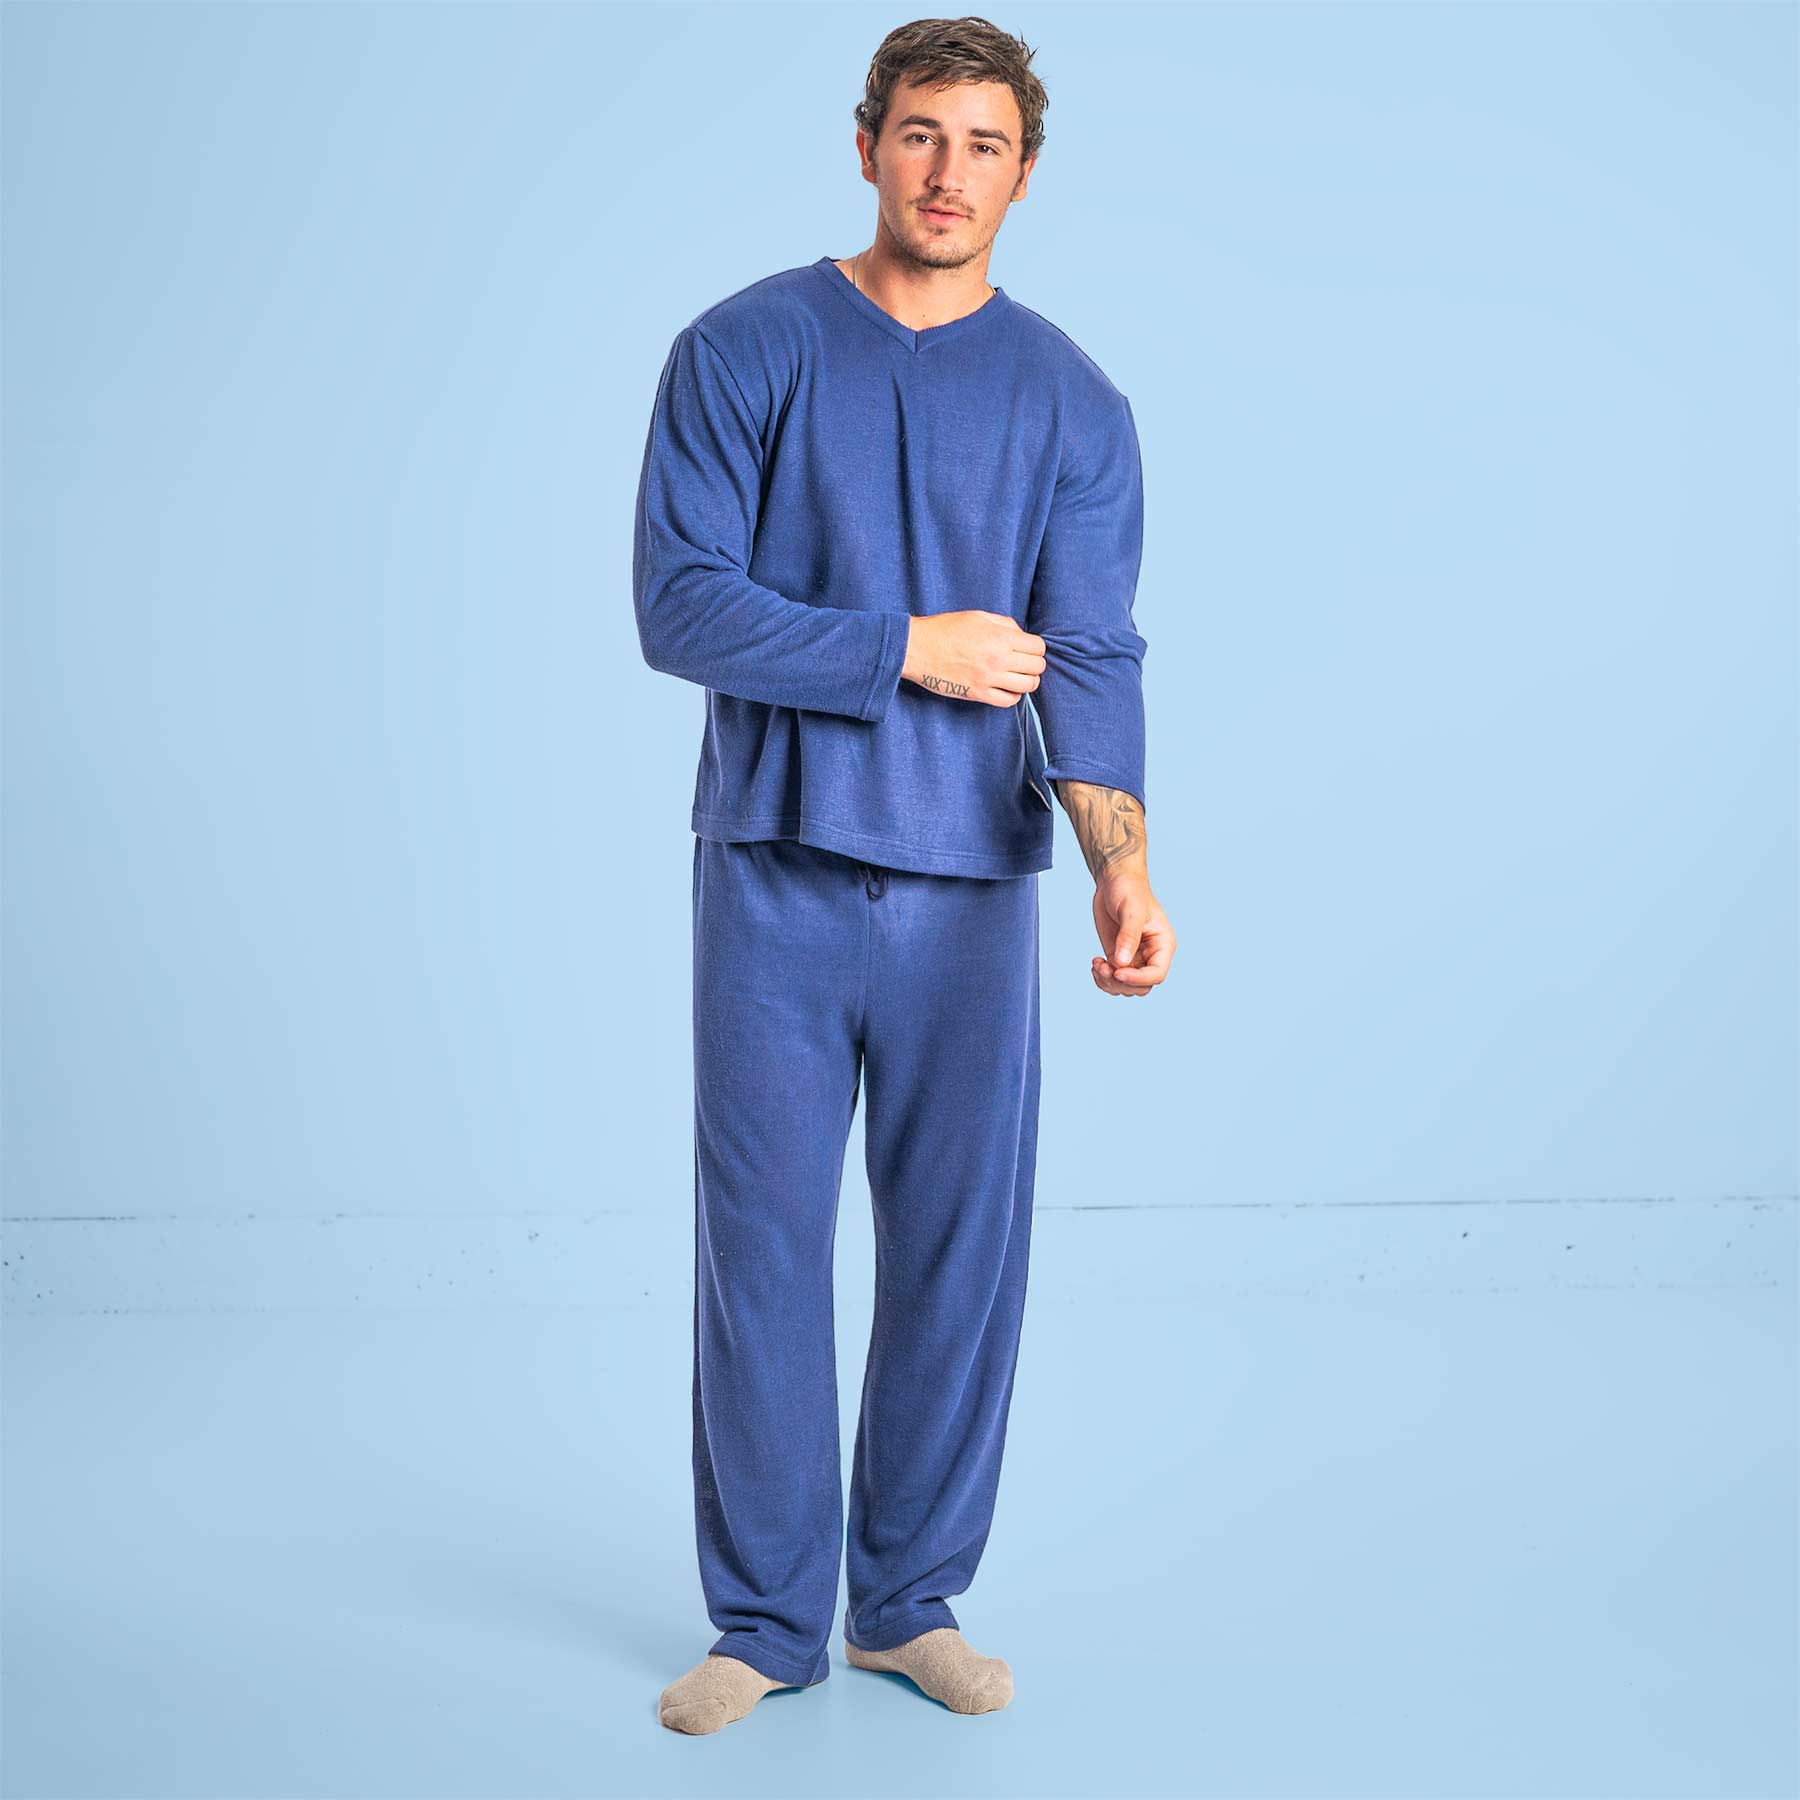 Children's Organic PJ Sets 2 piece sleepwear 100% cotton - City Threads USA